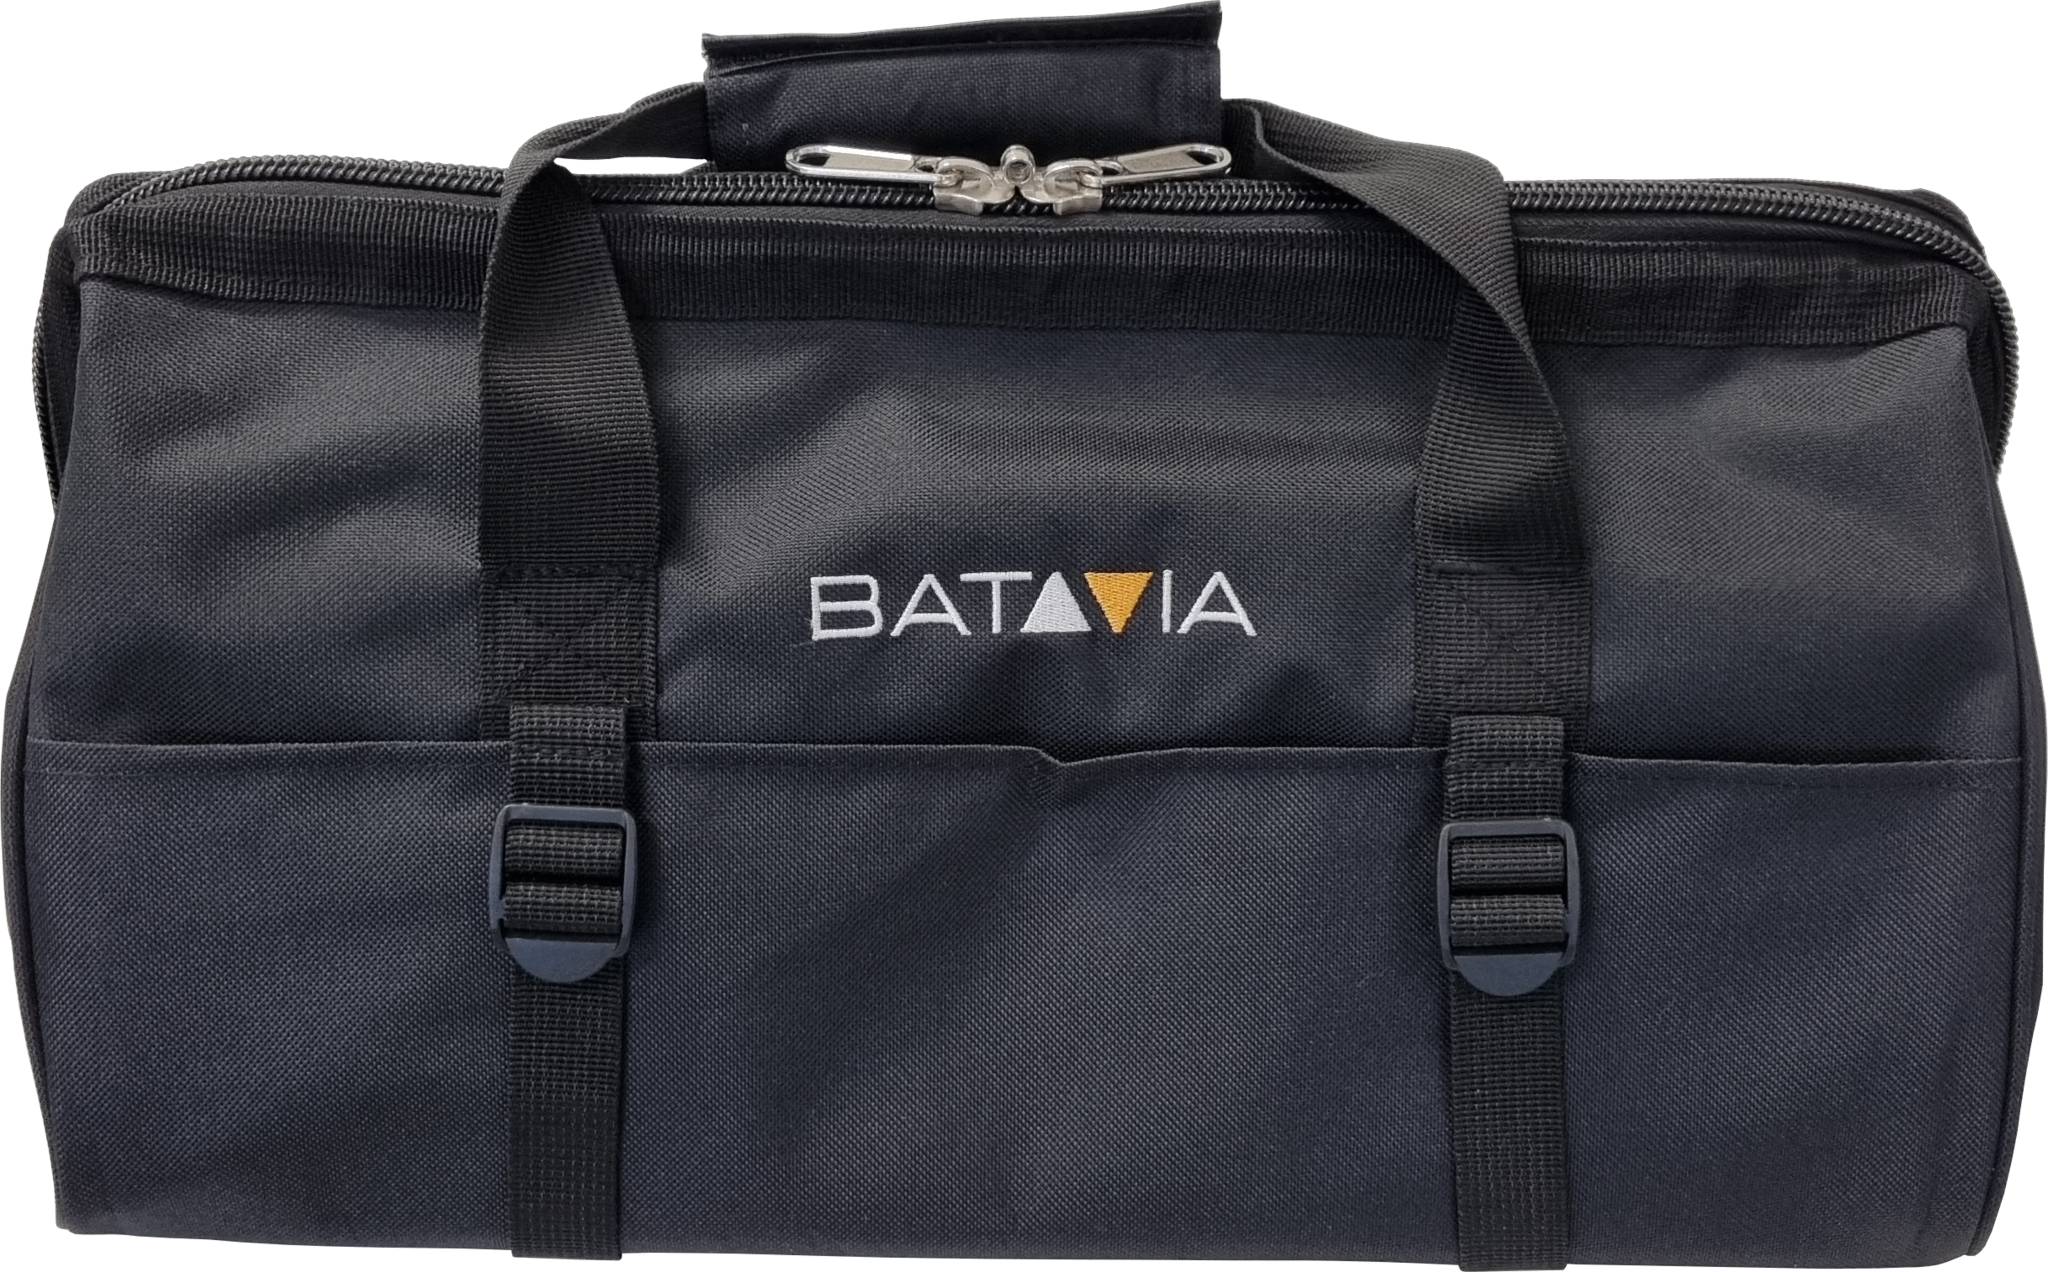 Vous pouvez acheter des articles FIXXPACK chez BATAVIA ! 